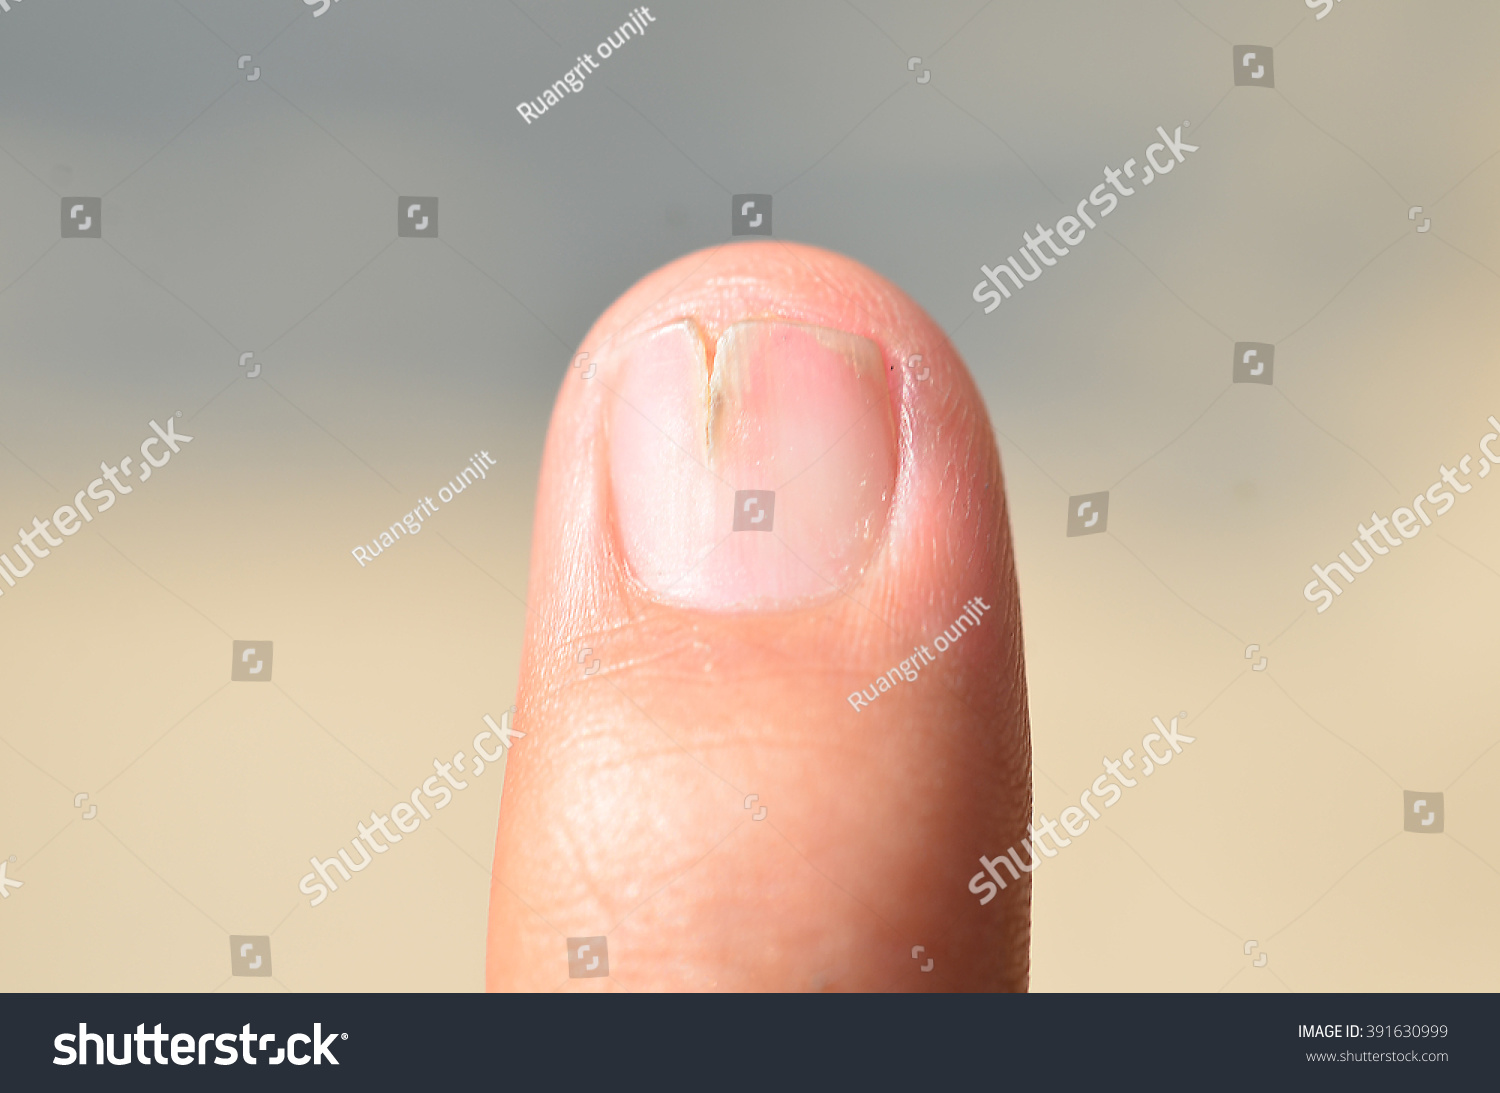 Zoon Abnormal Finger Stock Photo 391630999 - Shutterstock